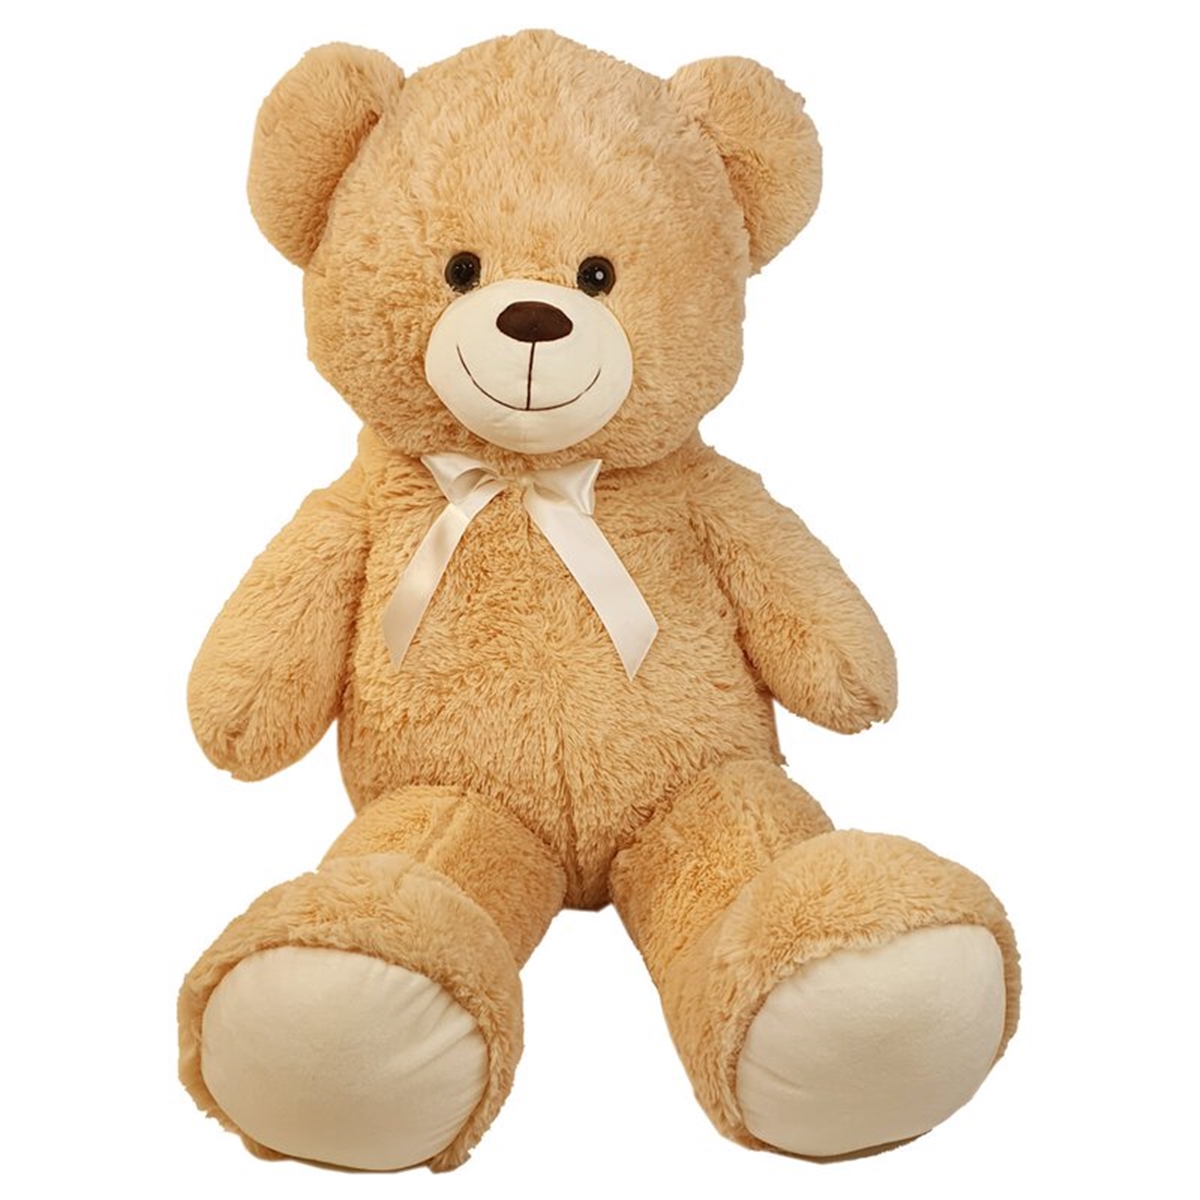 Plüschbär, Kuschelbär Beige 100cm gross - Knuddelbär, Kuscheltier oder Plüschtier ist dieser Teddy Bär